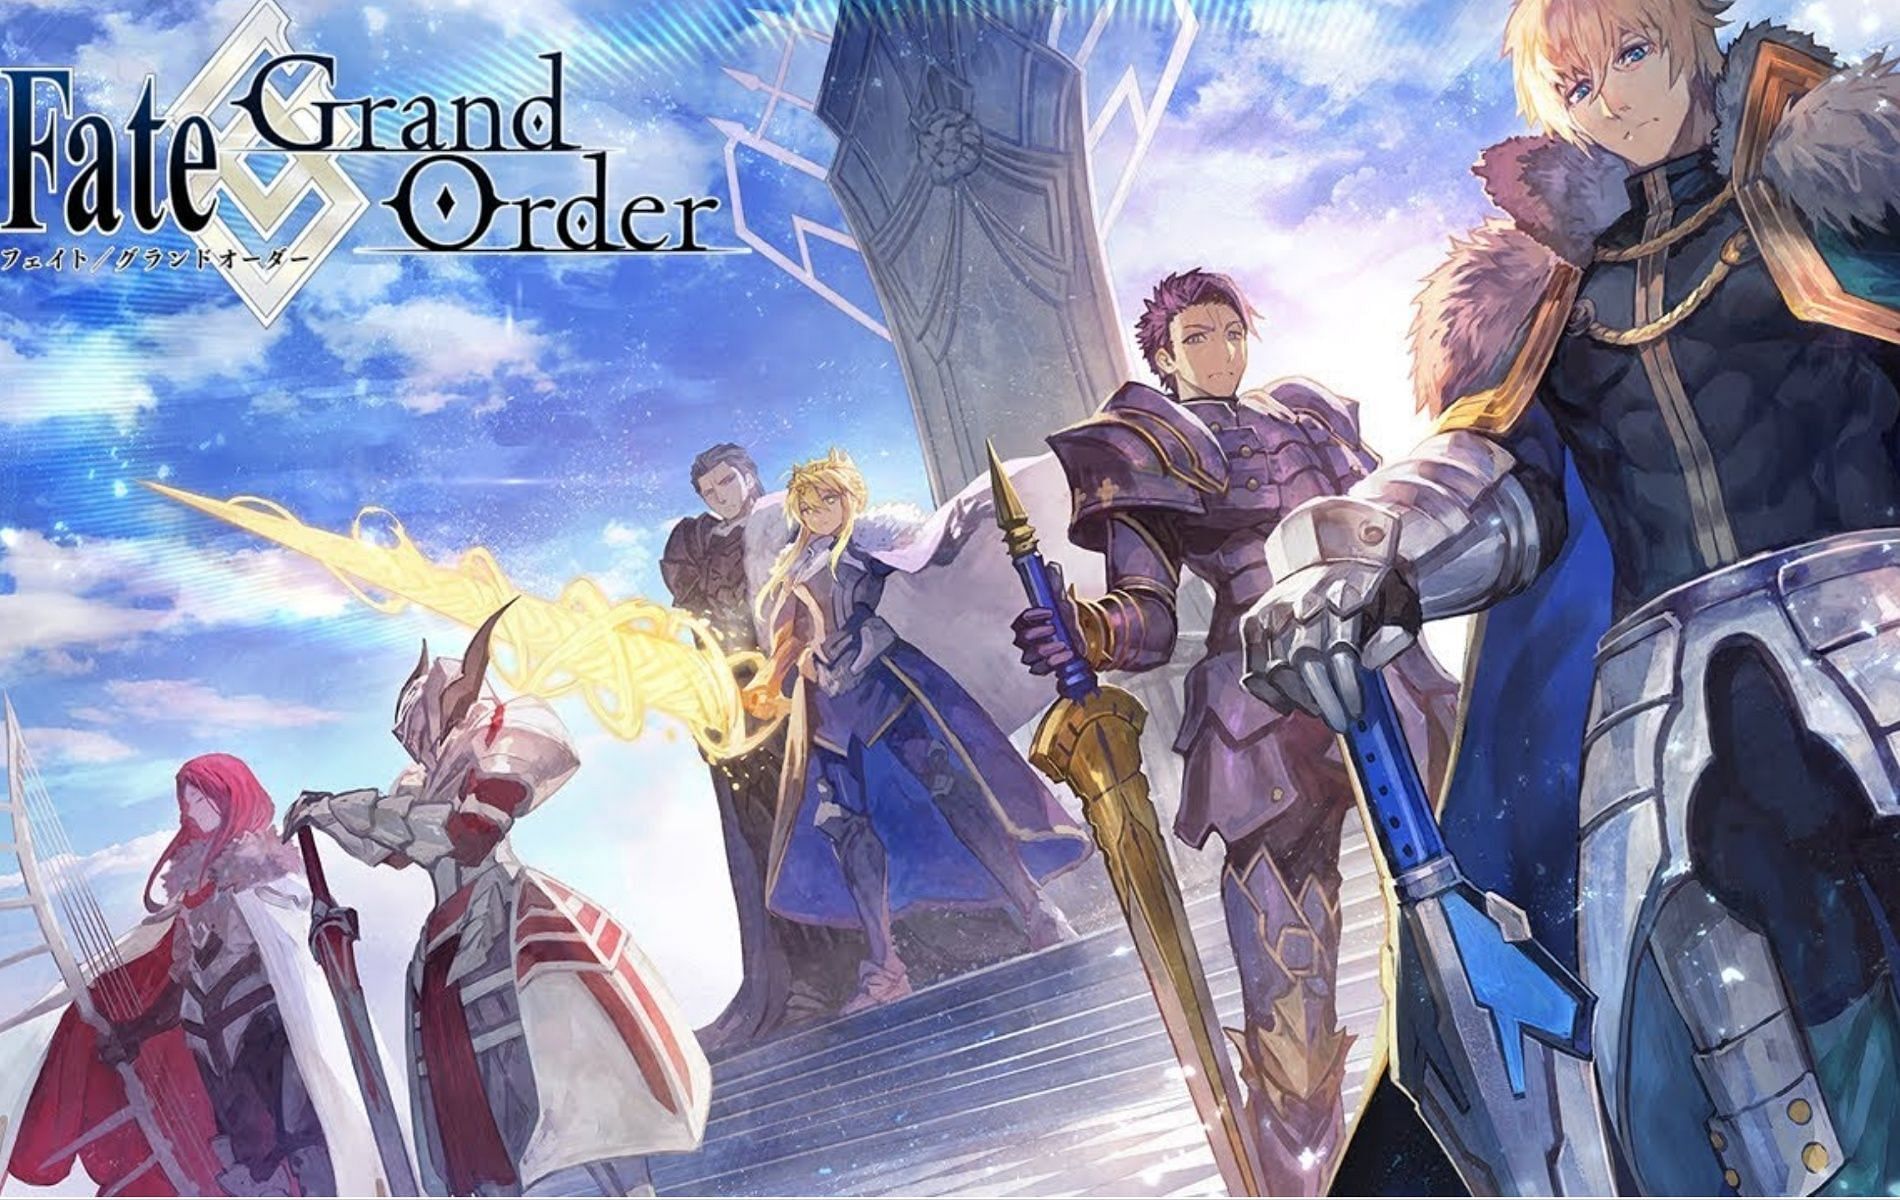 Fate/Grand Order Lostbelt 6: Avalon La Fae - Release Date, new ...